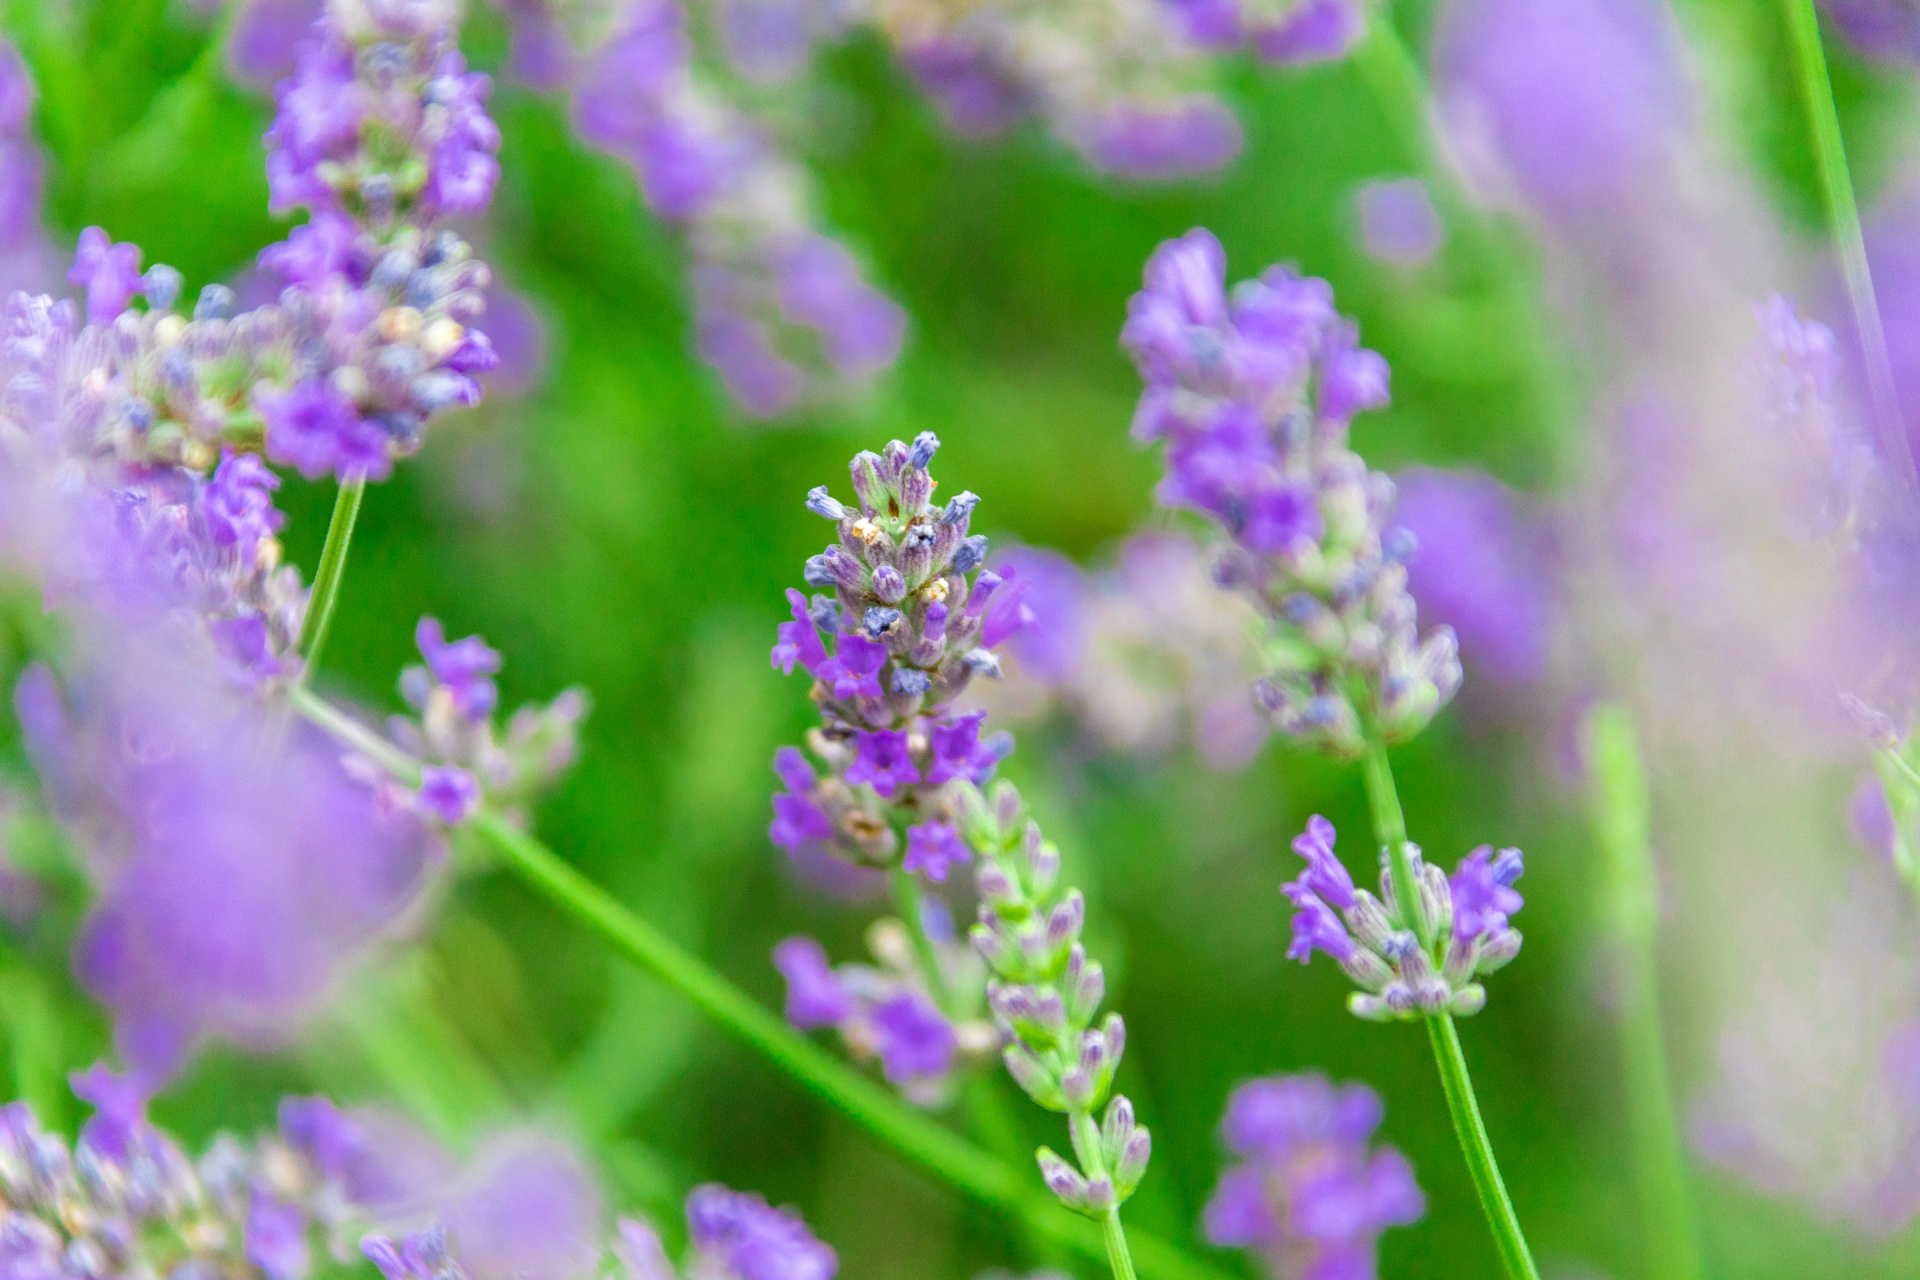 Flowering lavender flowers